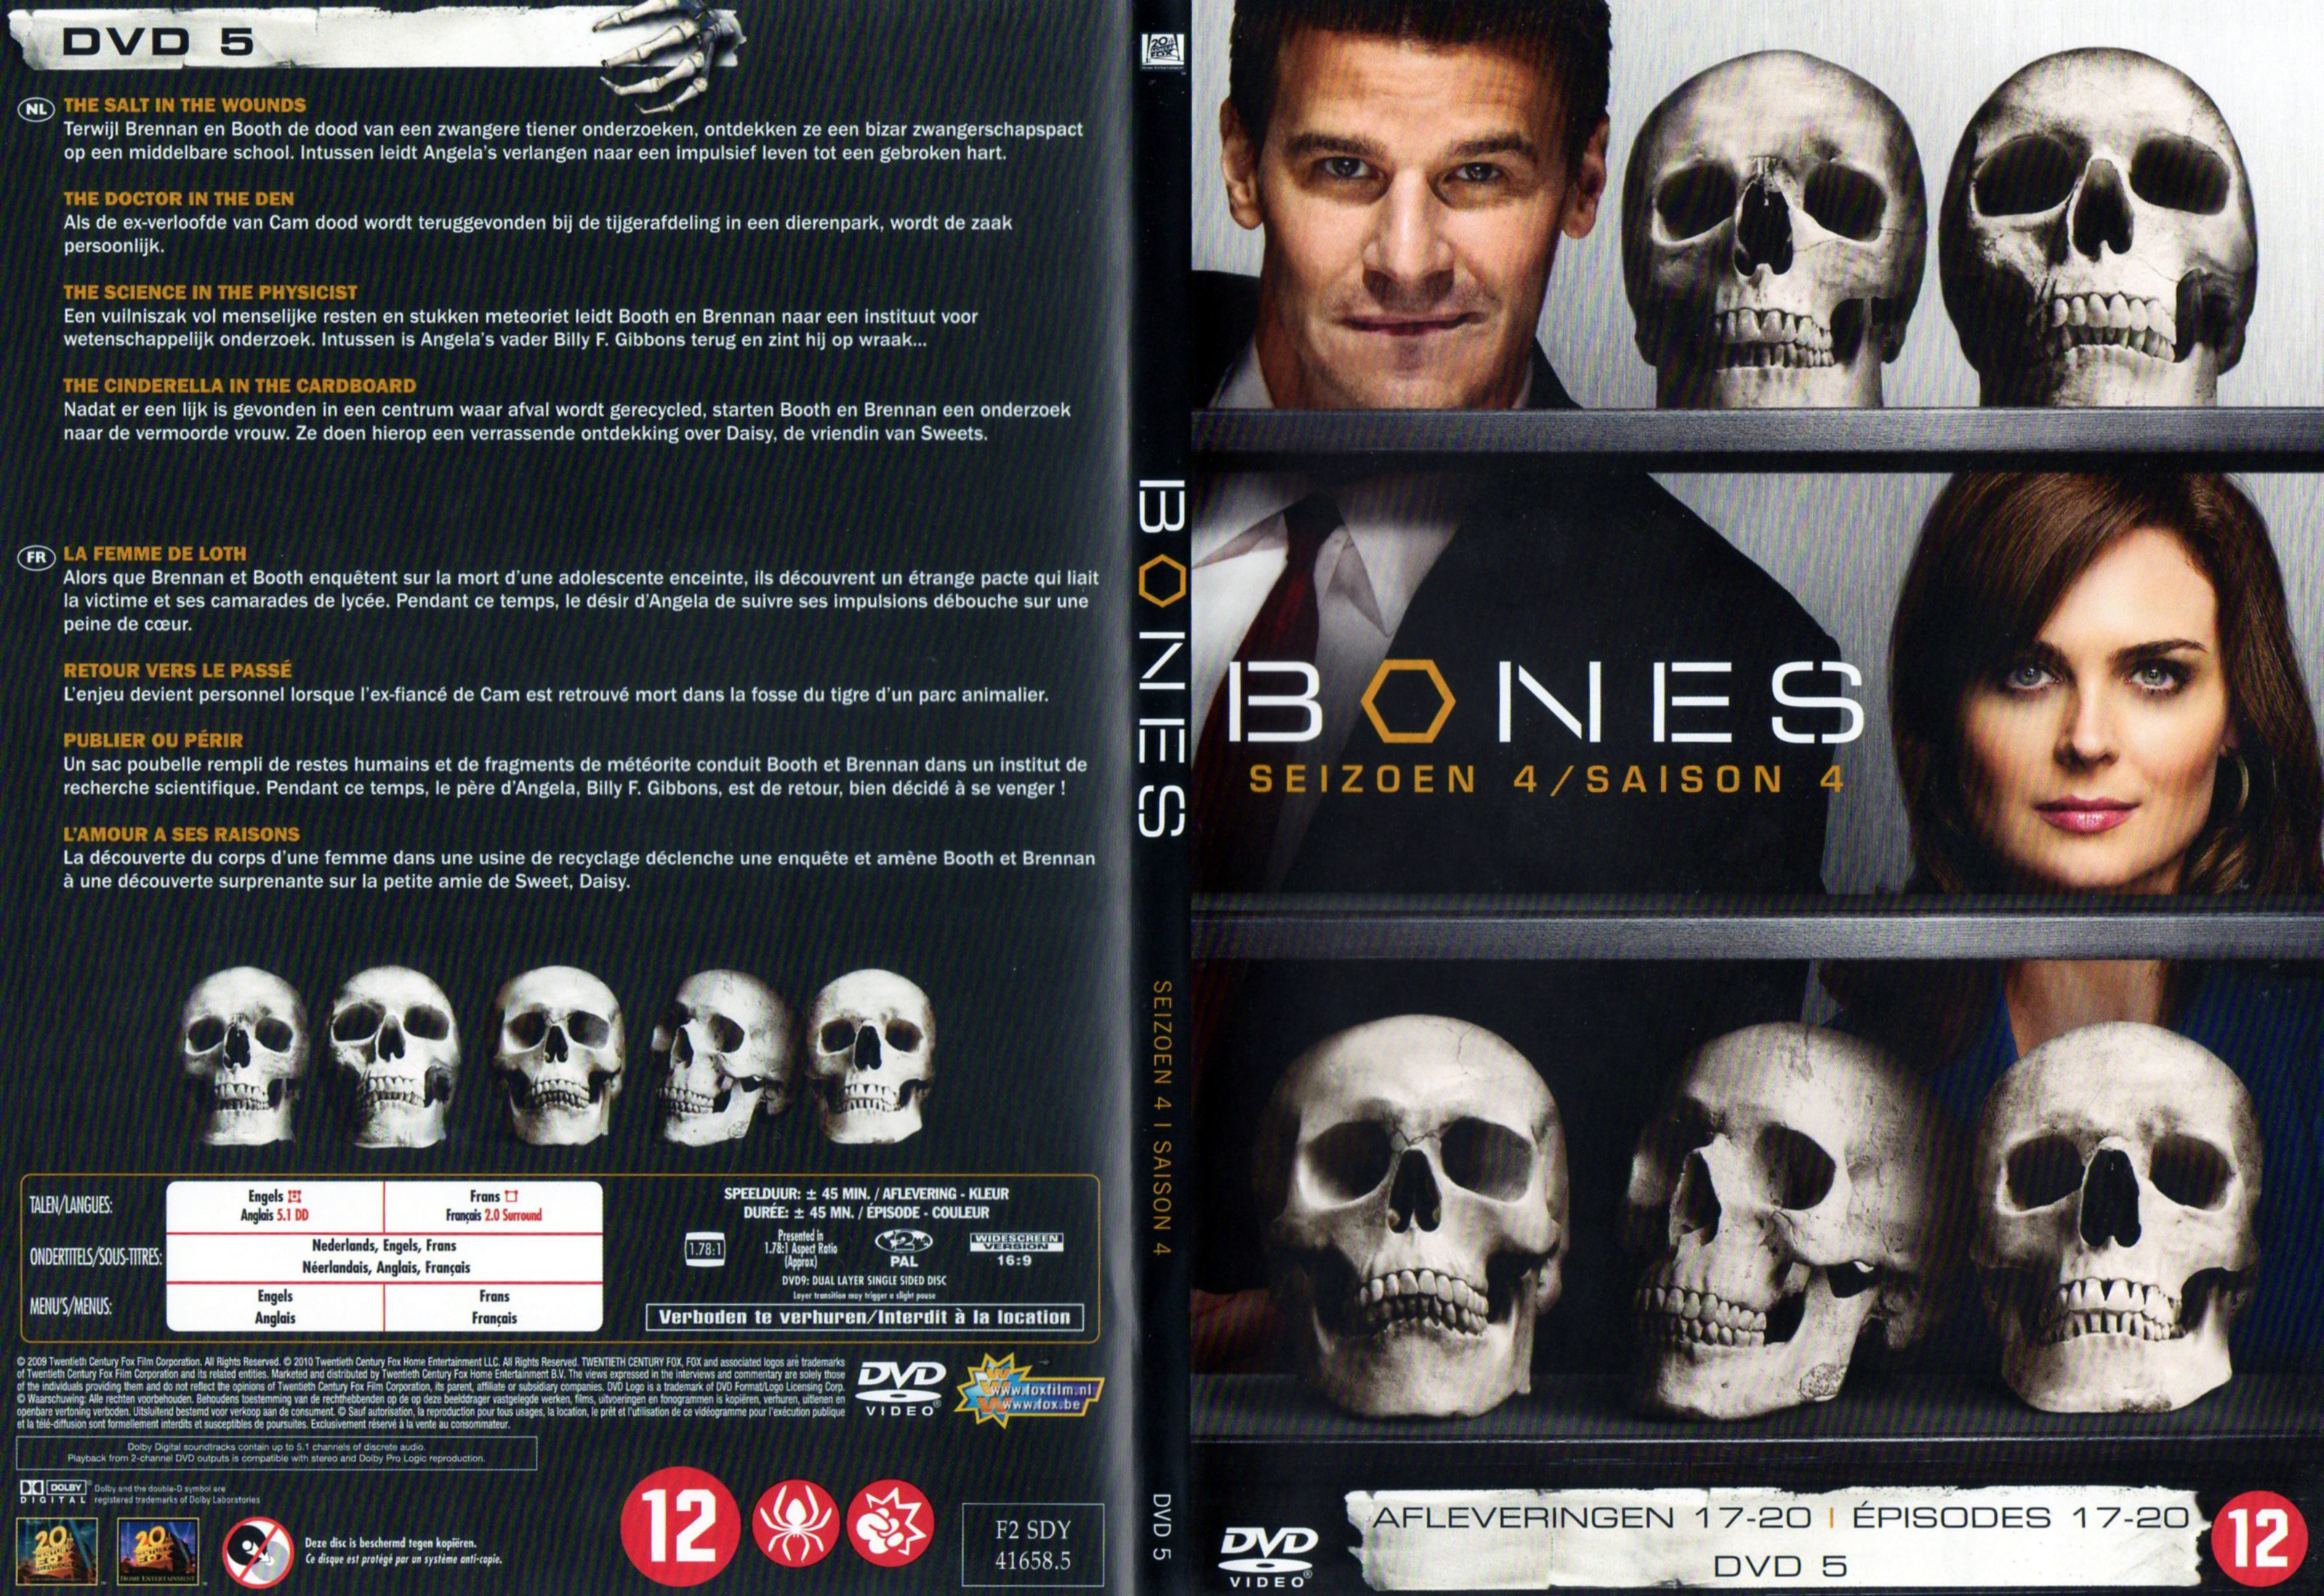 Jaquette DVD Bones Saison 4 DVD 5